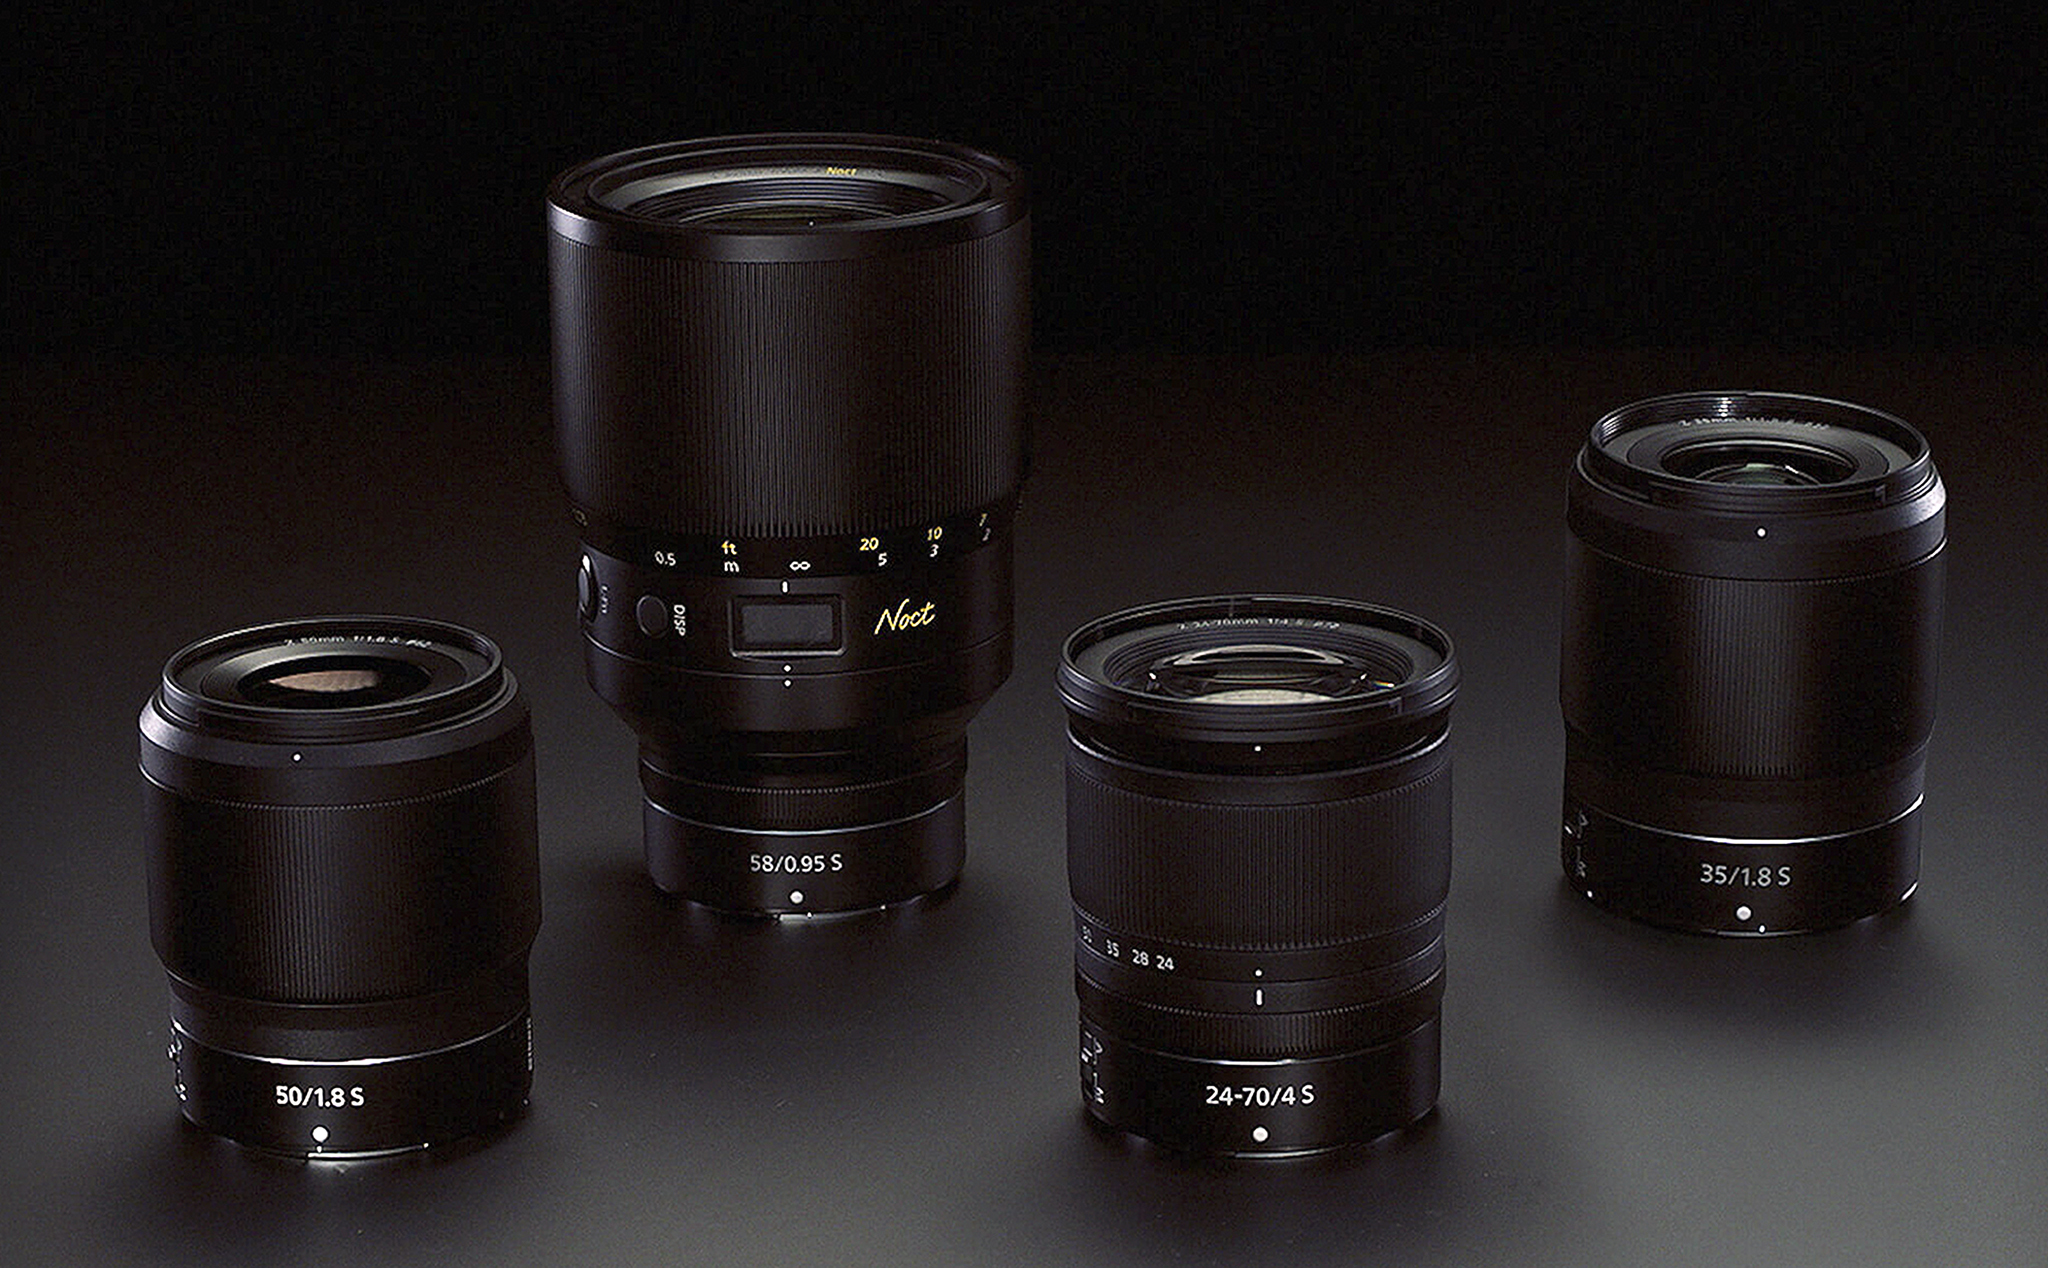 Tổng hợp hệ thống ống kính Nikon đã làm cho ngàm Z